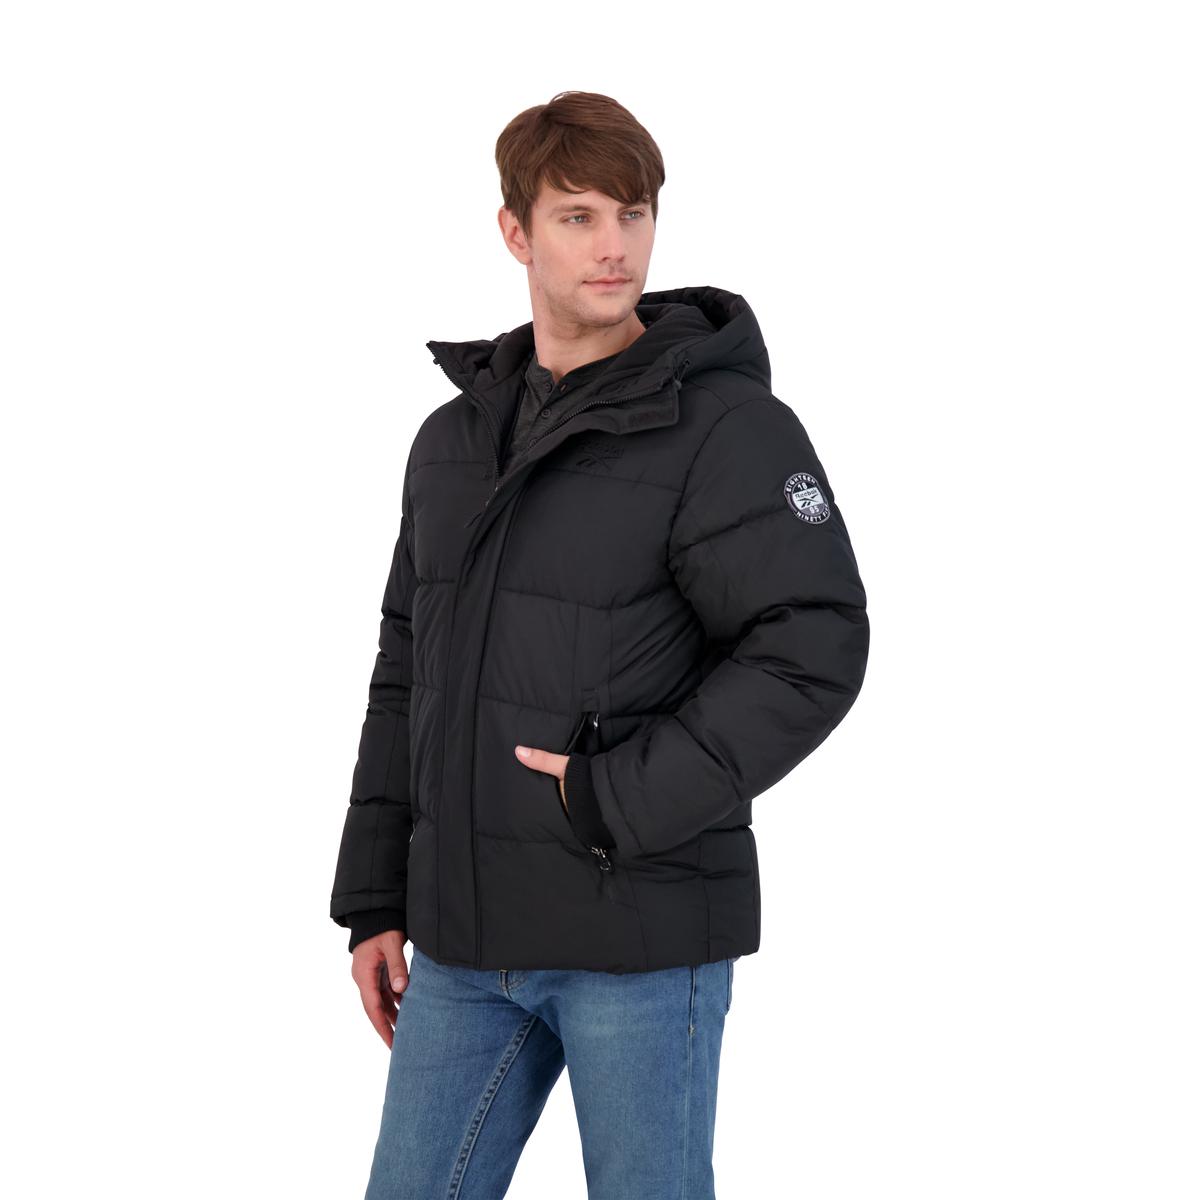 Reebok Heavyweight Puffer Coat for Men- Winter Jacket | eBay